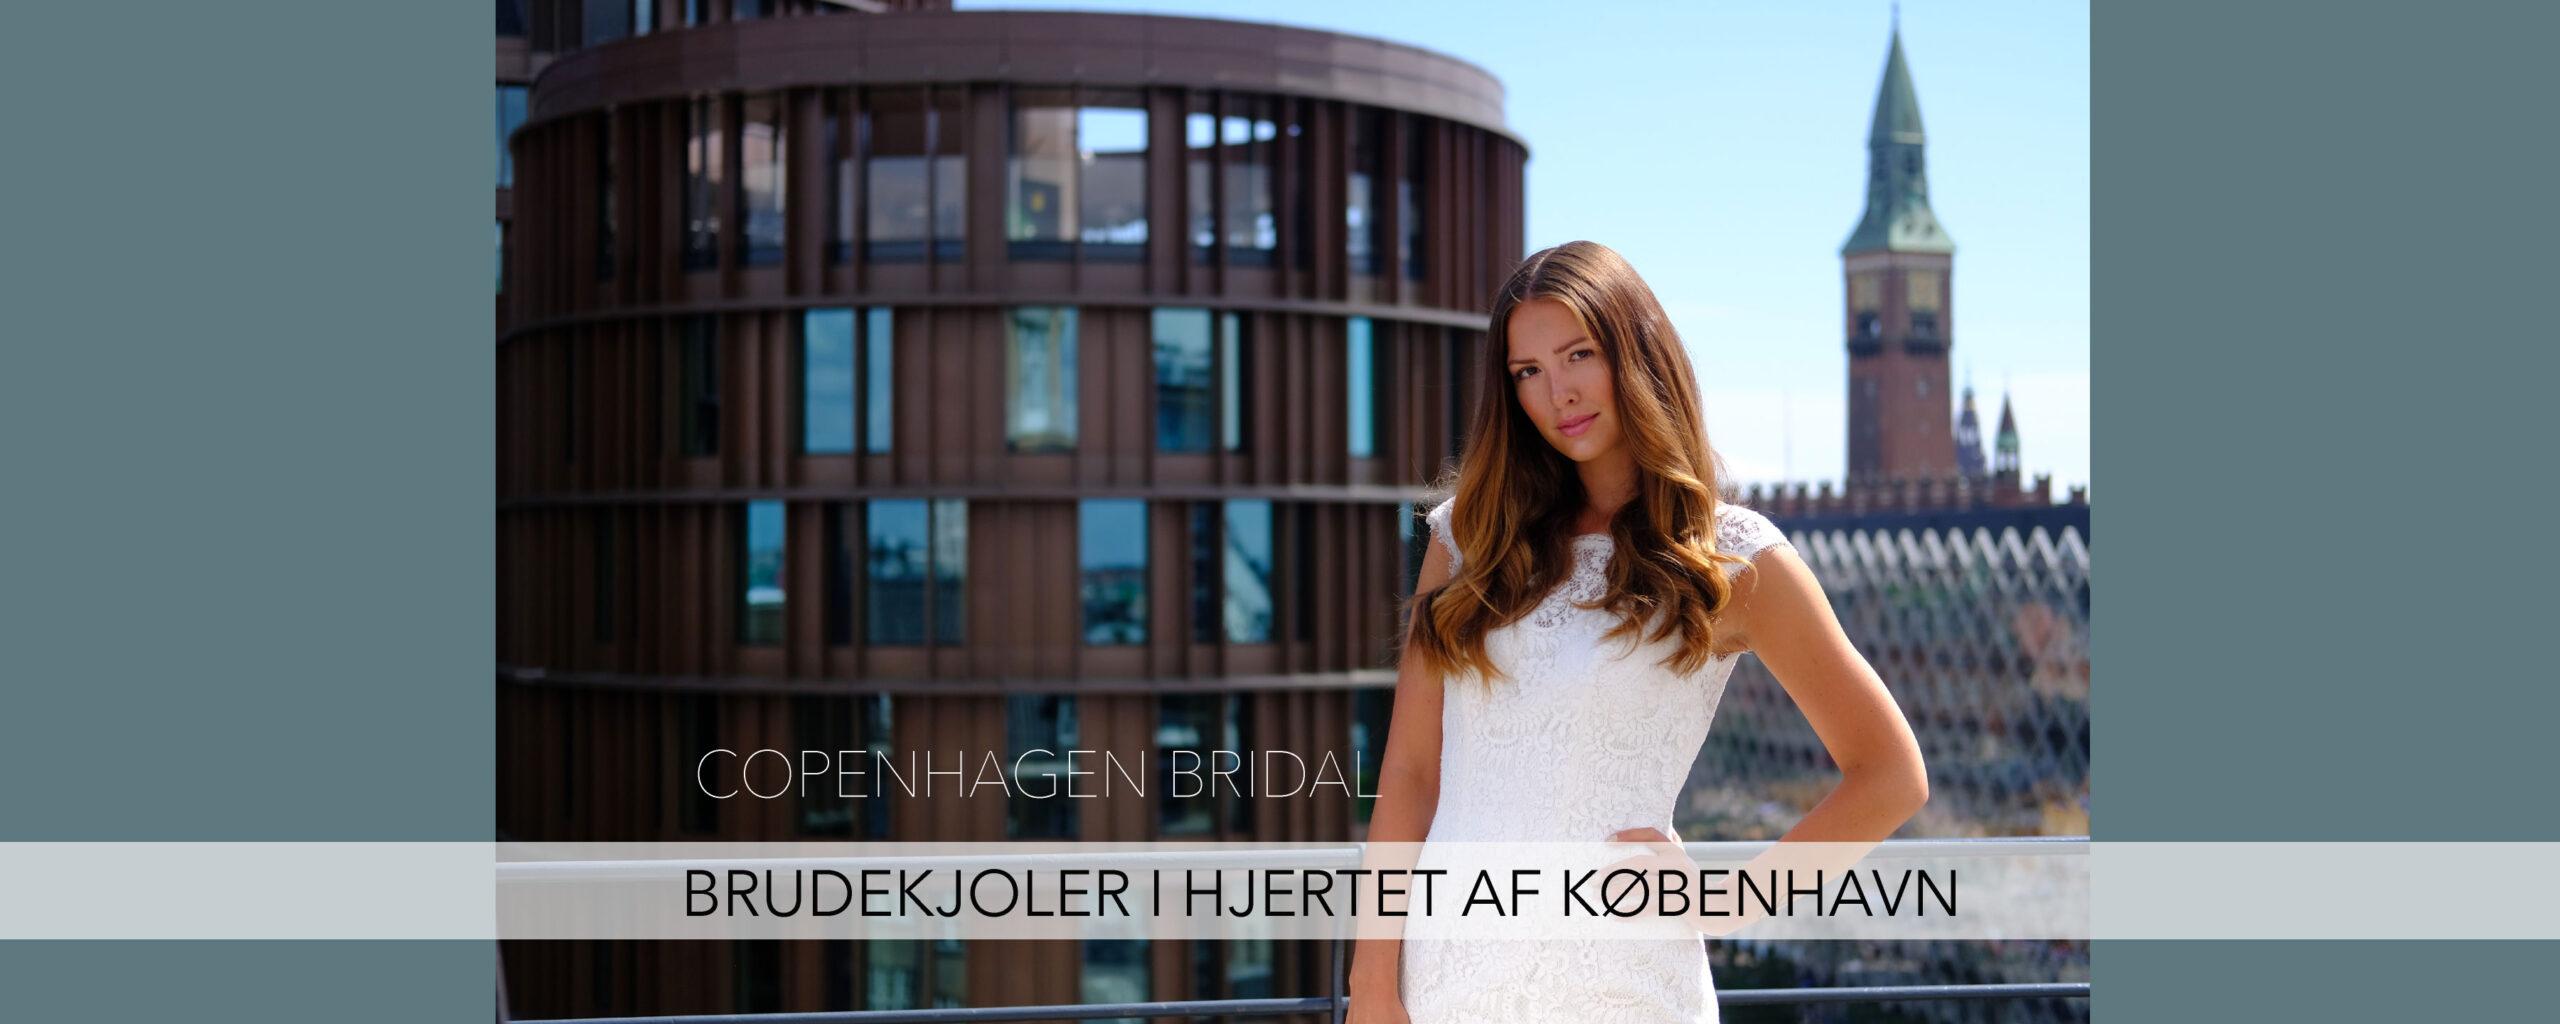 Brudekjoler i hjertet af København - Copenhagen Bridal